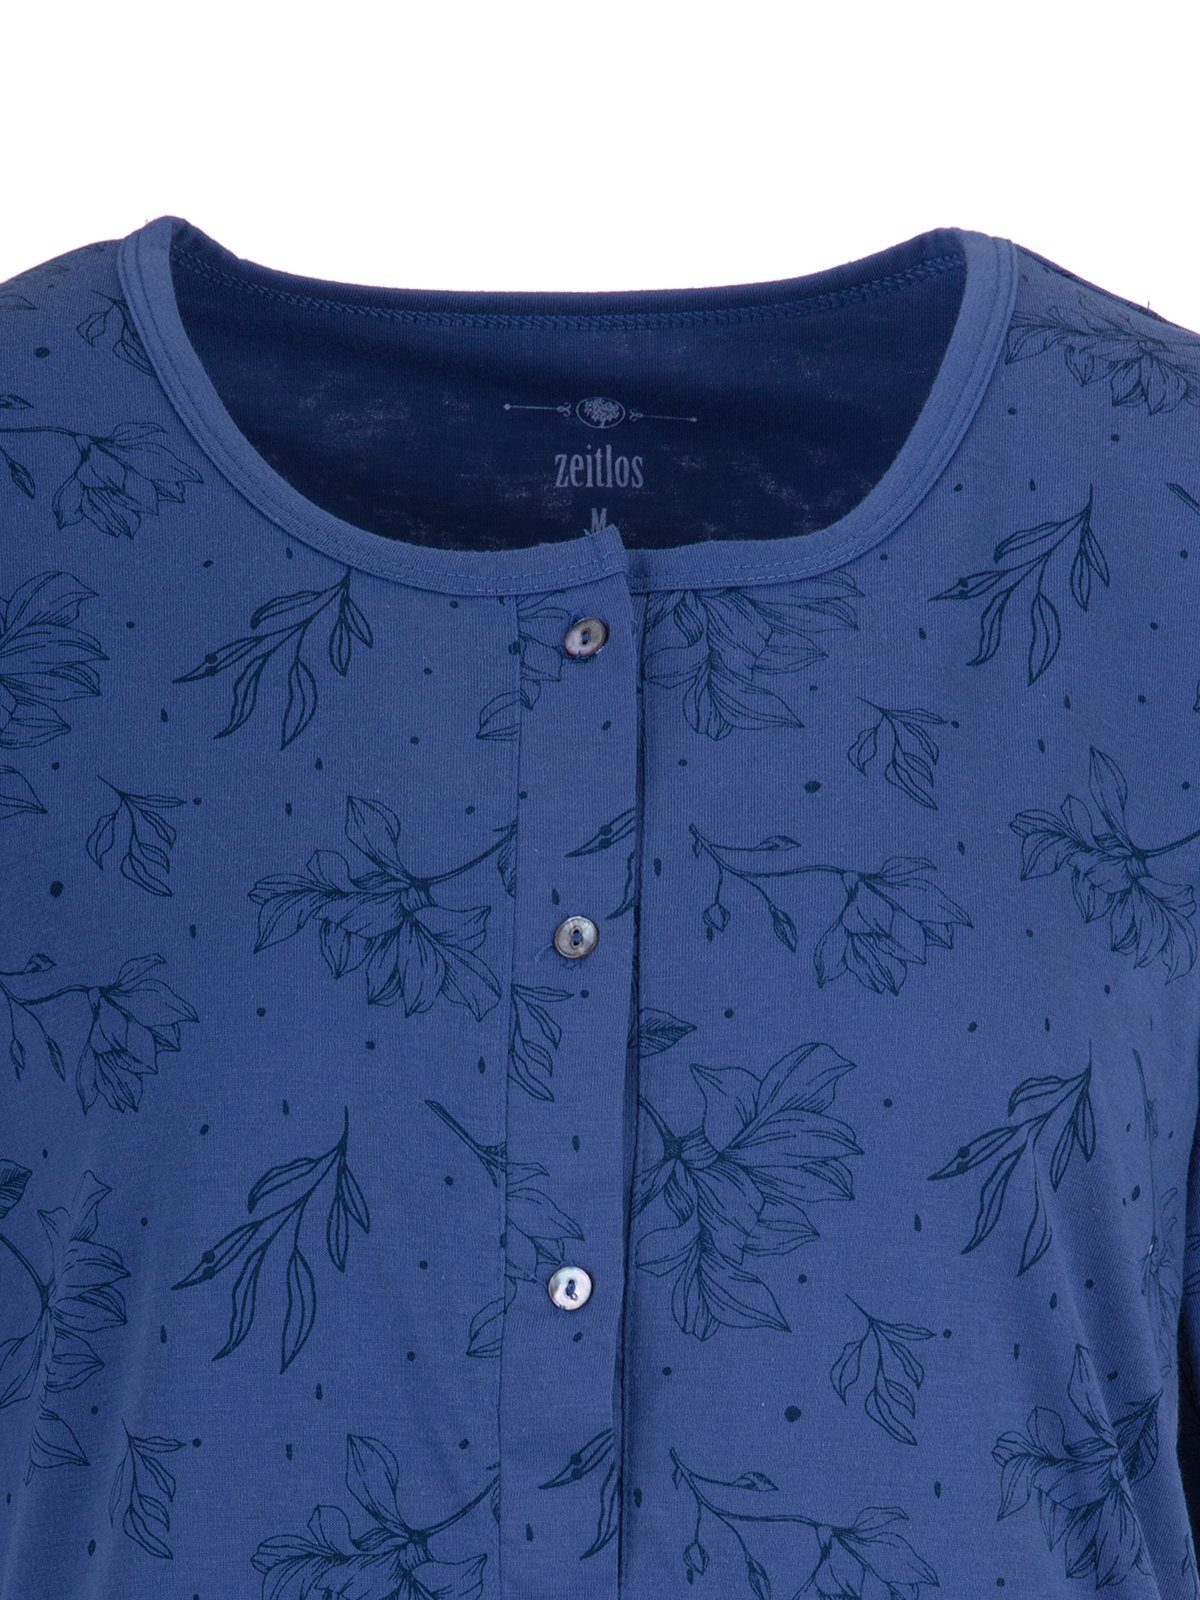 - blau Pyjama Schlafanzug Set Floral Kurzarm zeitlos